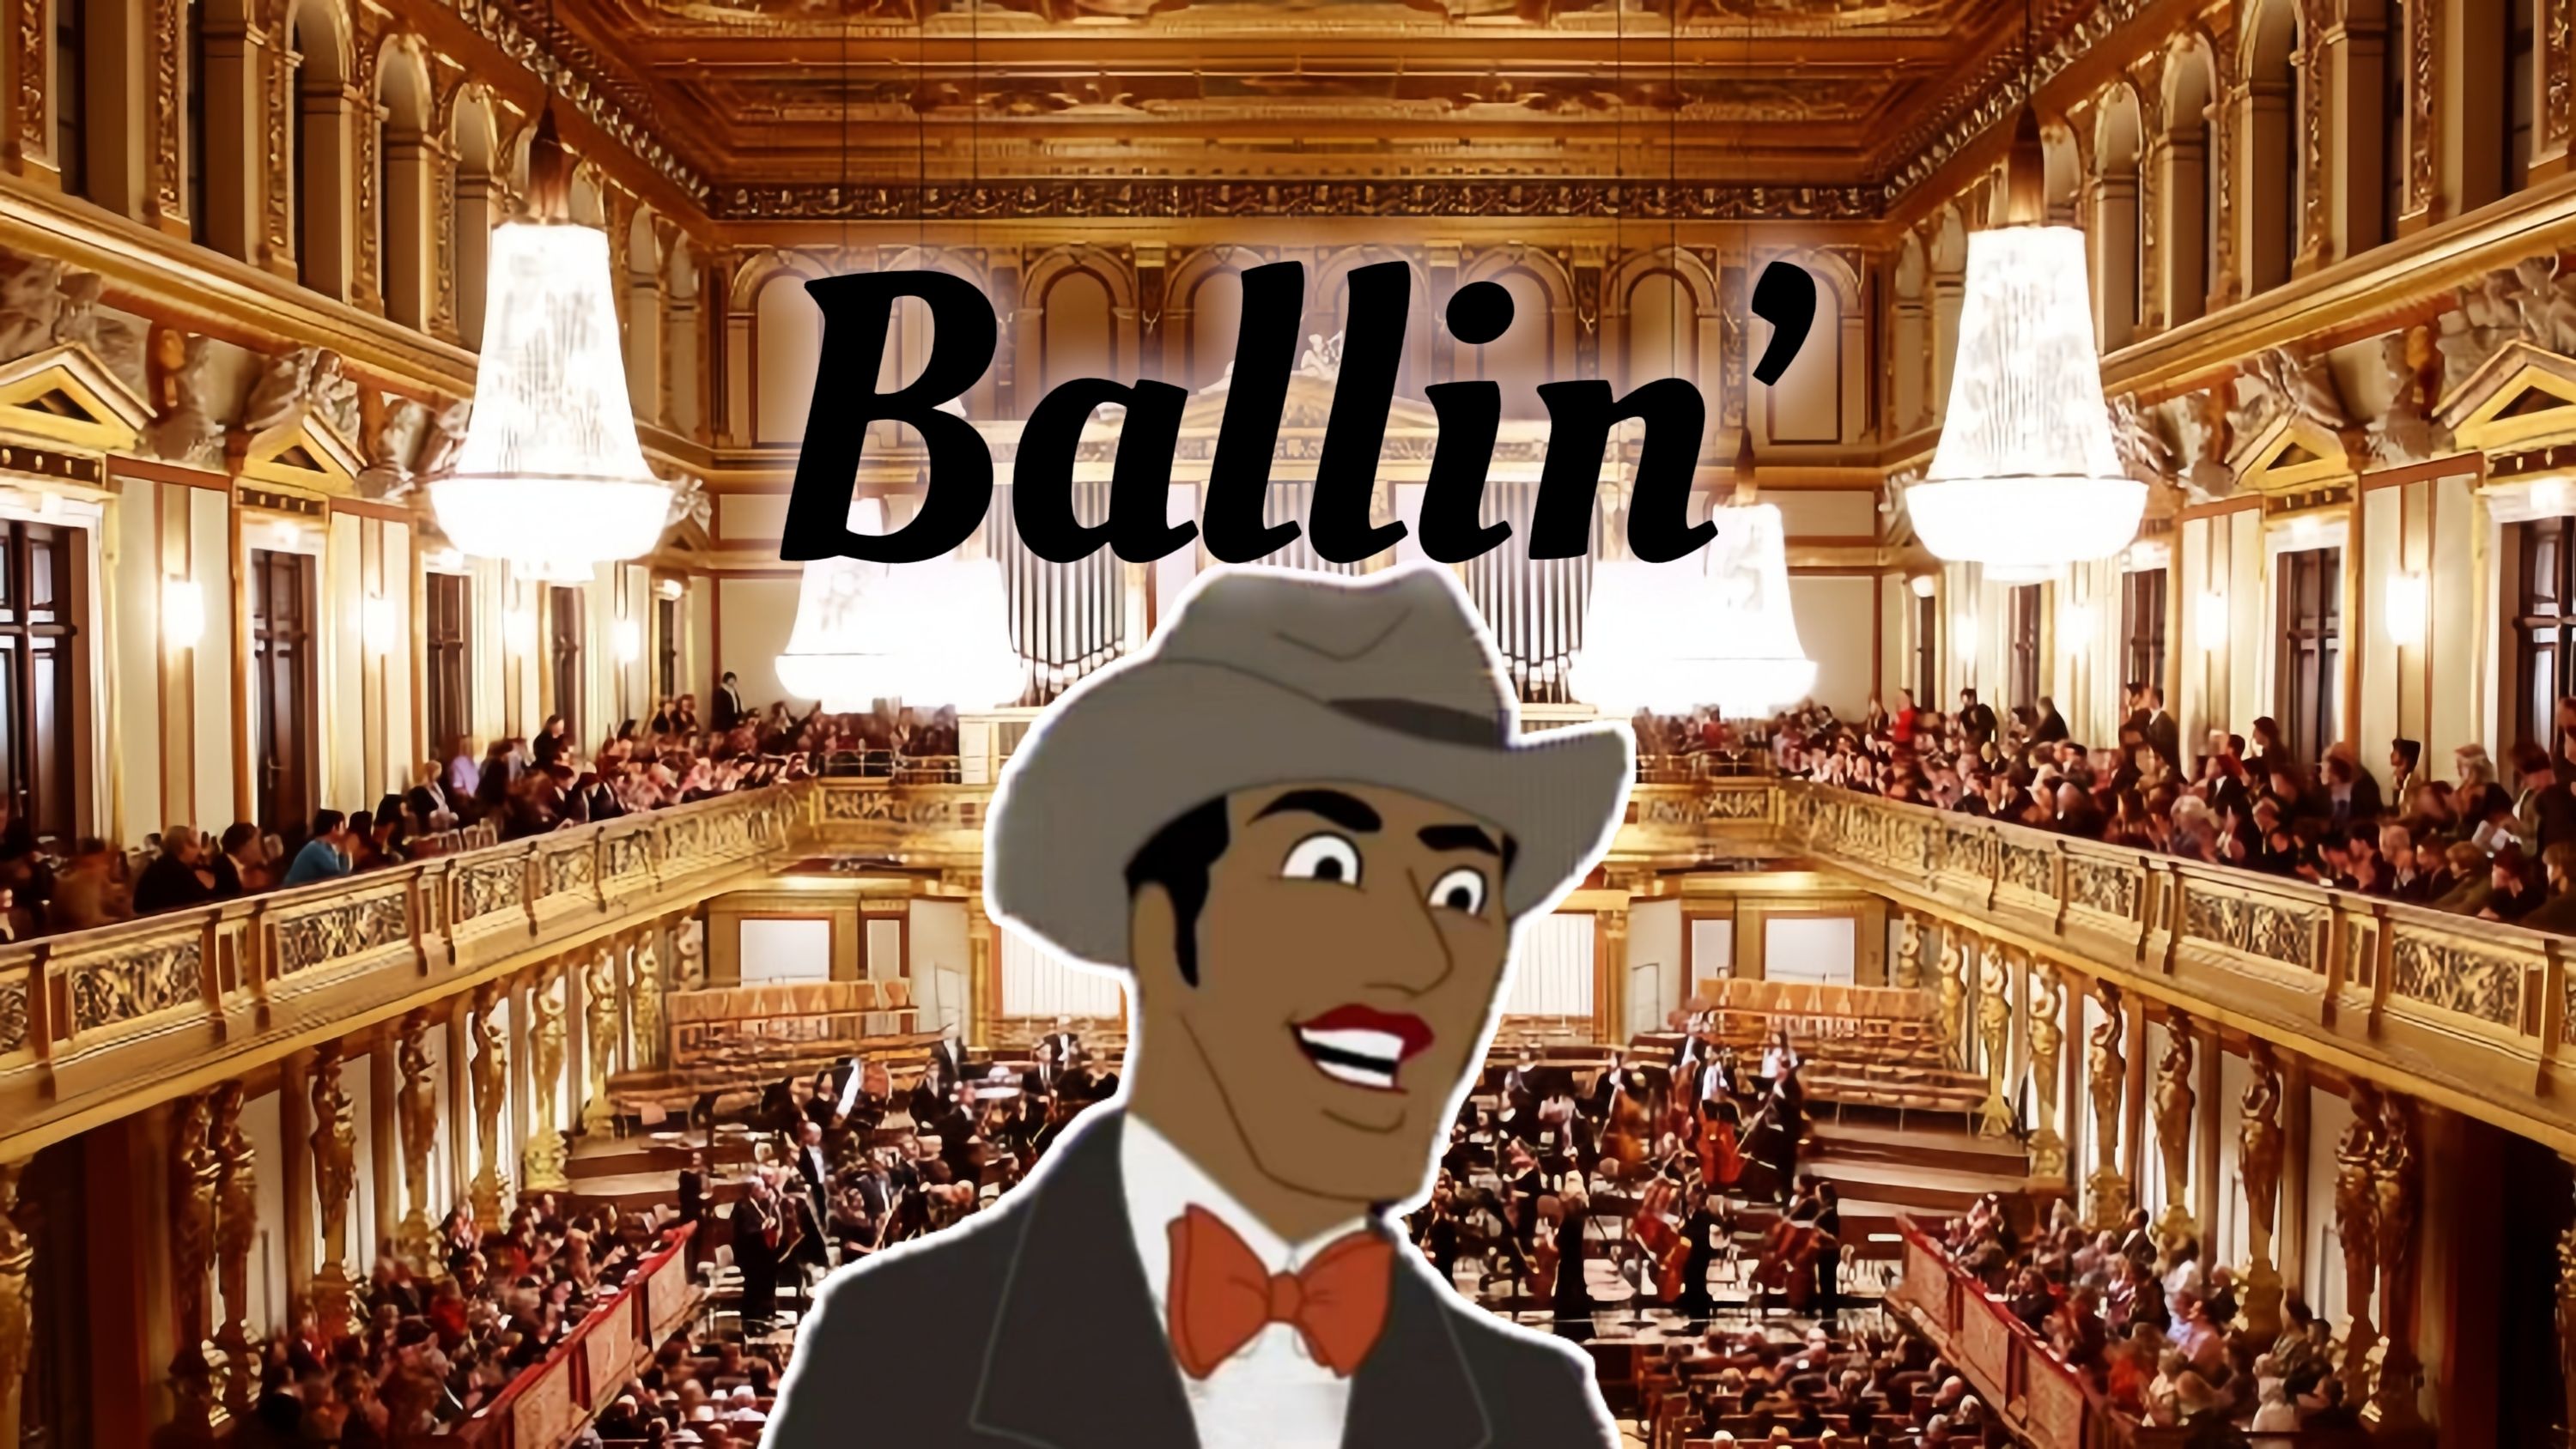 维也纳金色大厅交响乐演奏「辛吉飞小曲」Ballin'，这使我的领结旋转！